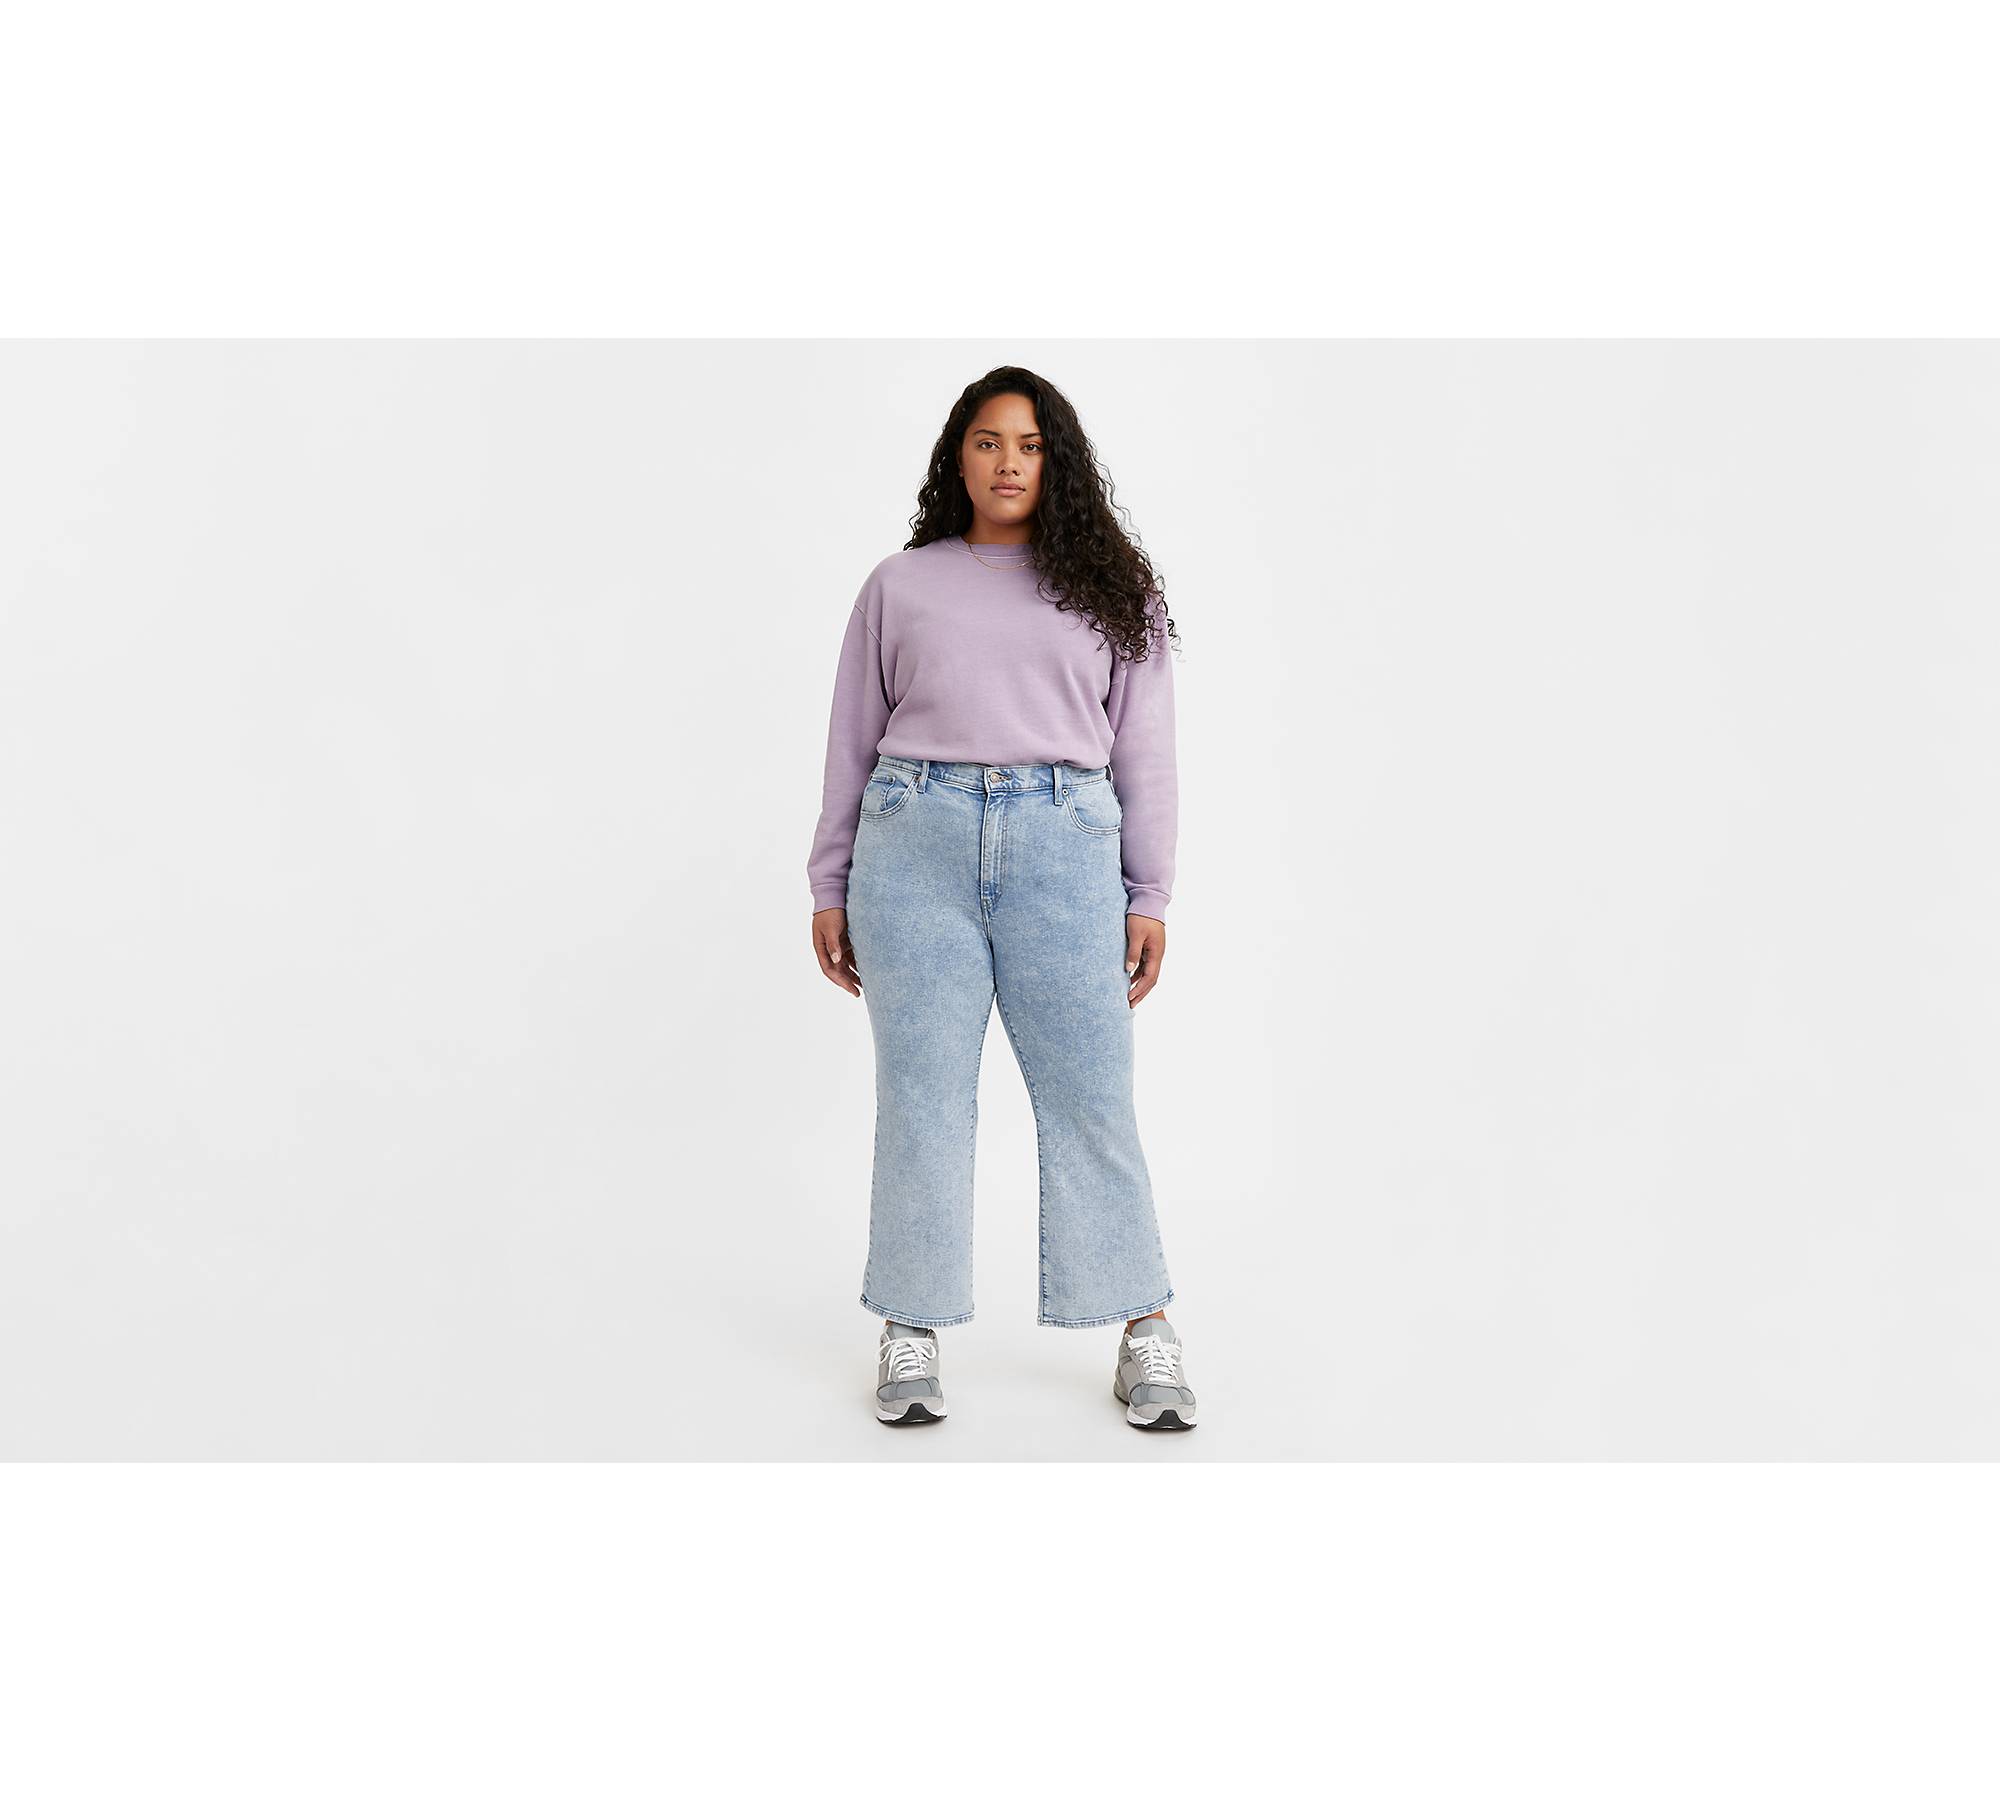 Crop flared jeans - Women